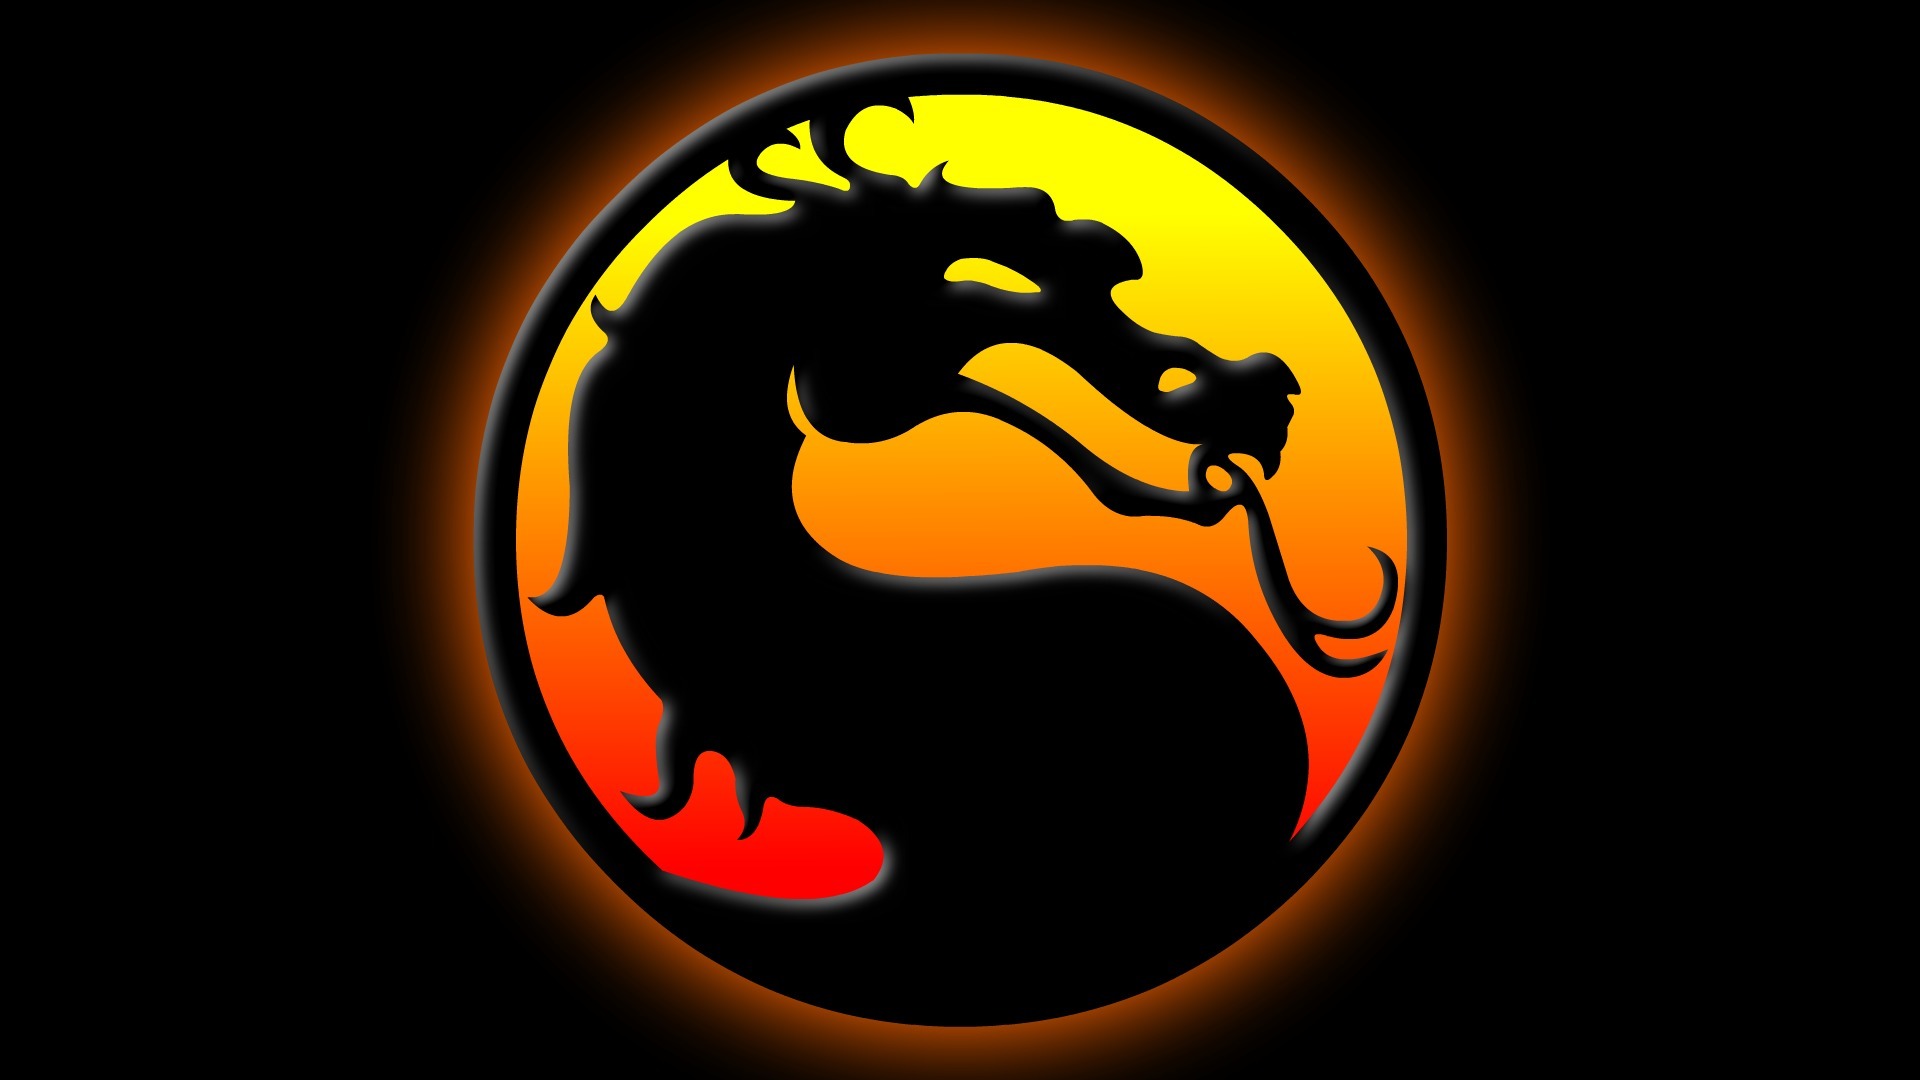 Play Mortal Kombat Mugen Games Online - Play Mortal Kombat Mugen